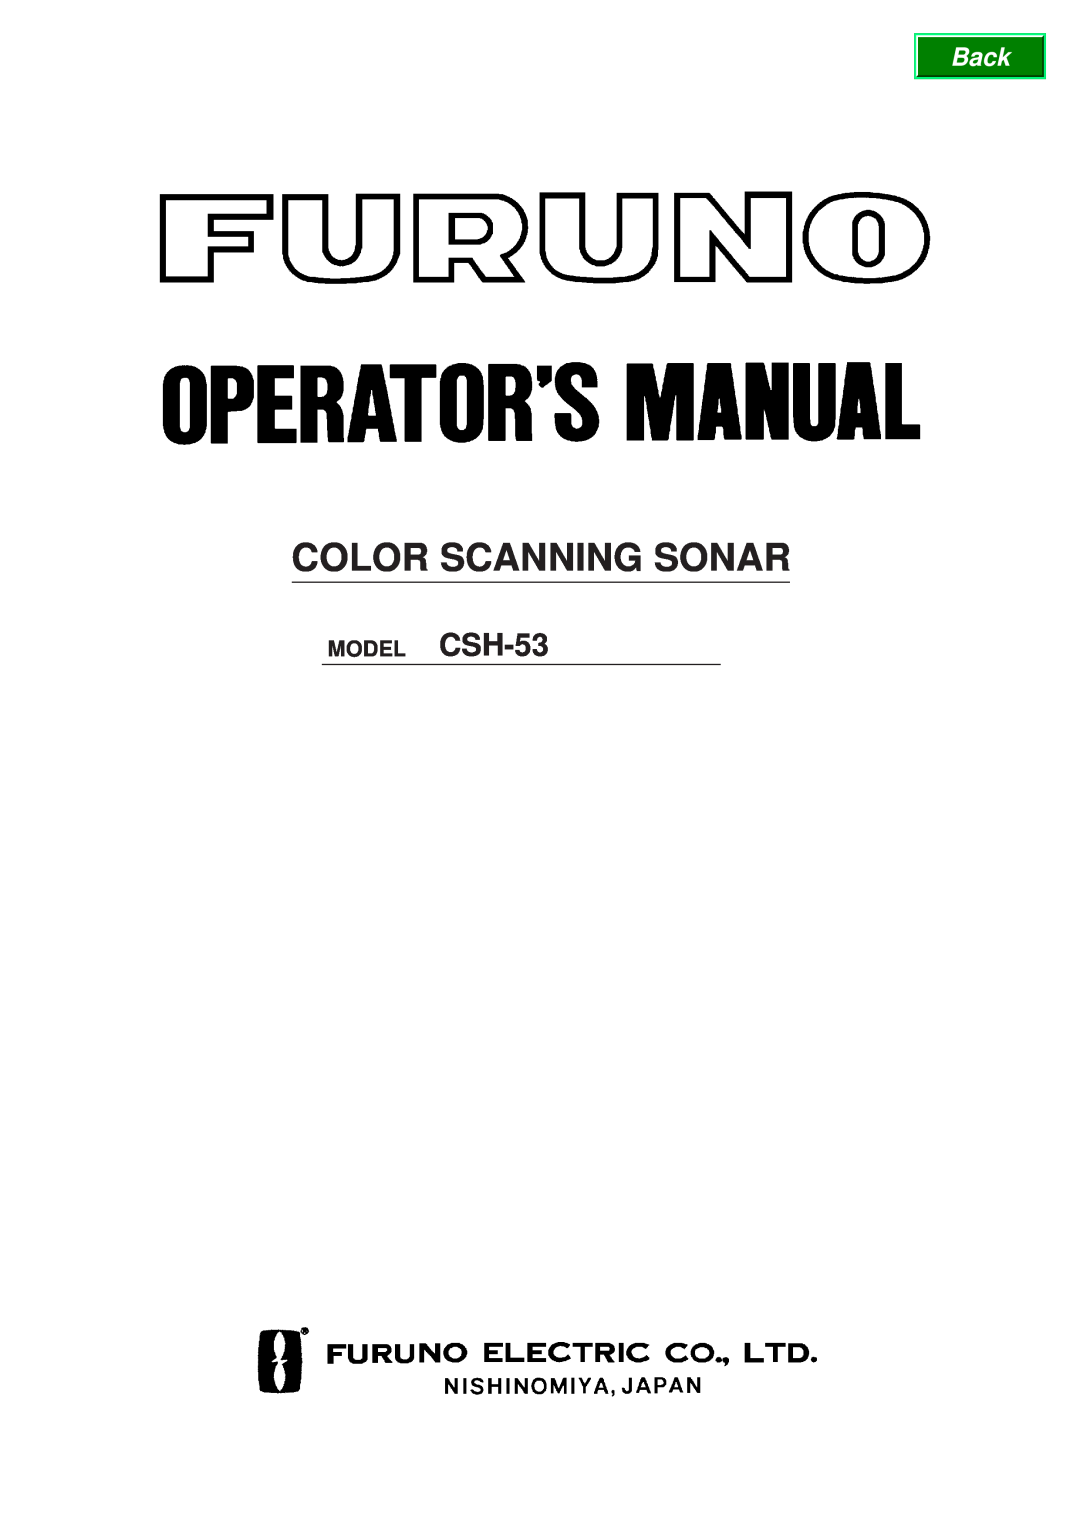 Furuno manual Color Scanning Sonar, MODEL CSH-53 